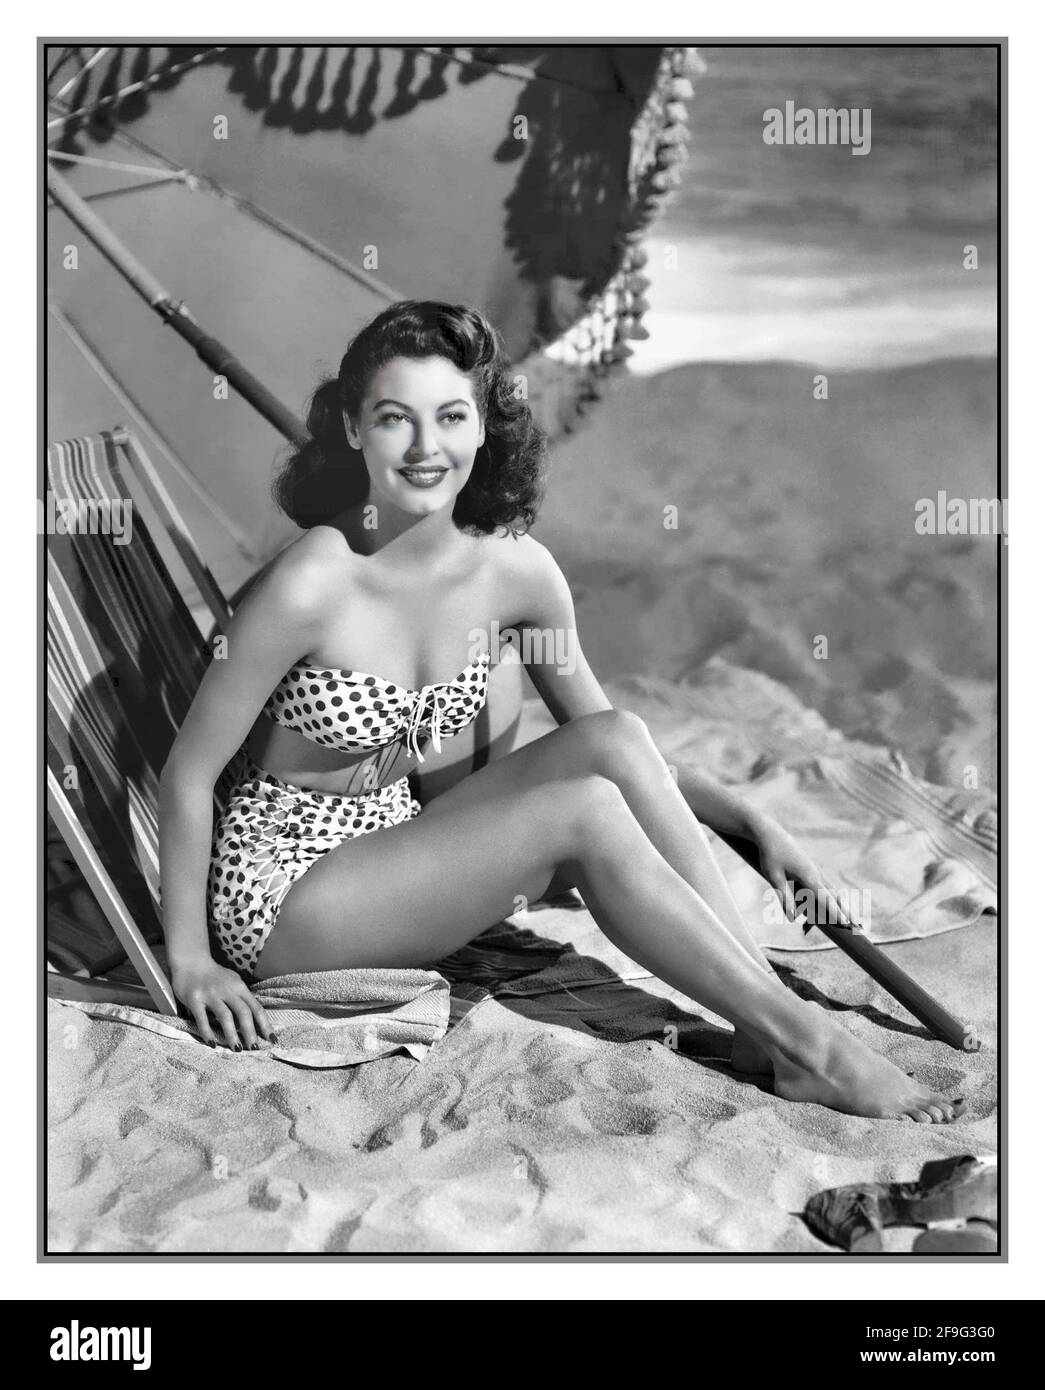 Hollywood actress bikini hi-res stock photography and images - Alamy